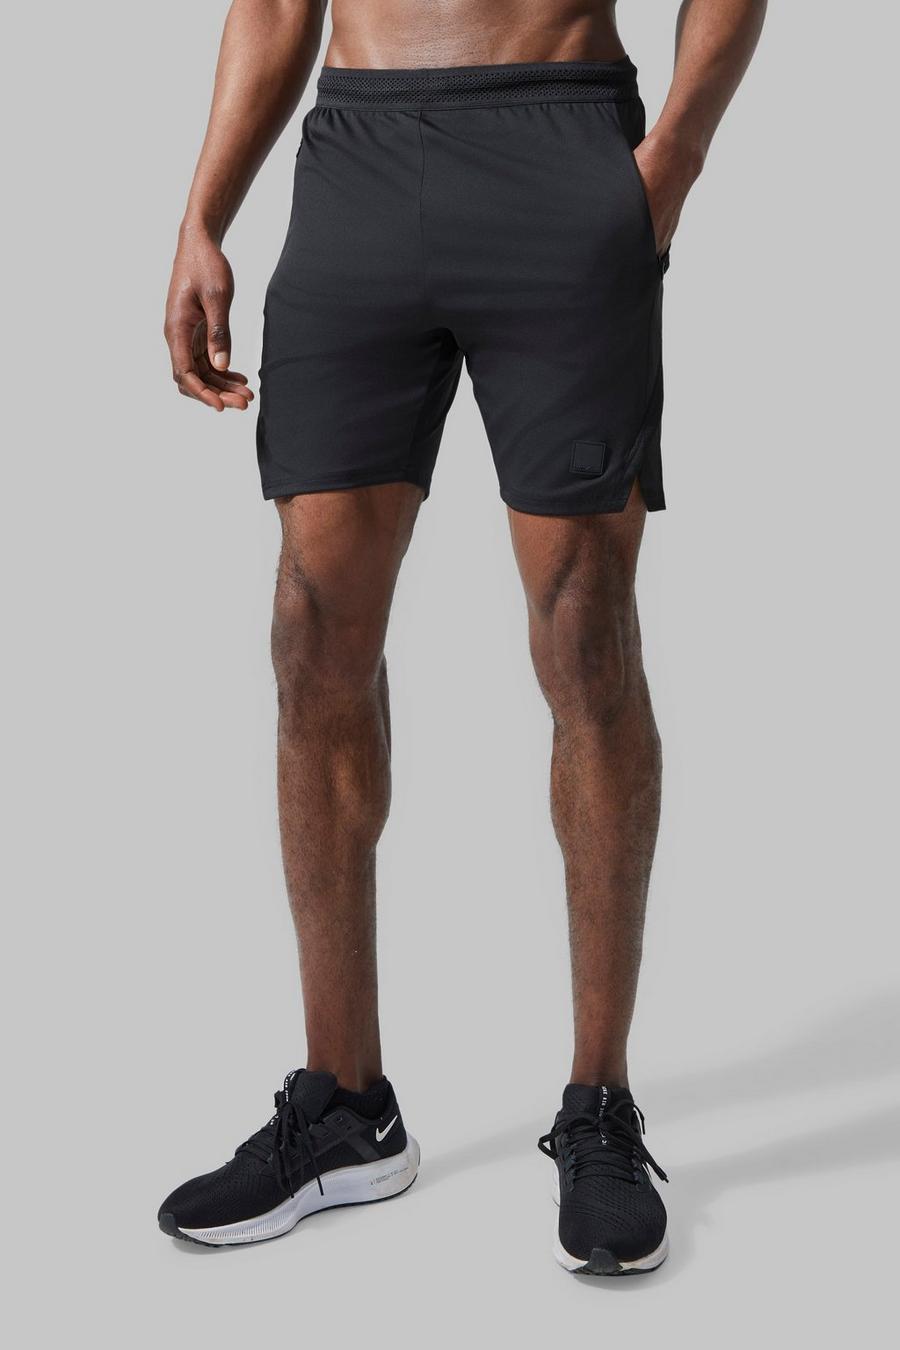 Pantalón corto MAN Active resistente con abertura en el bajo, Black